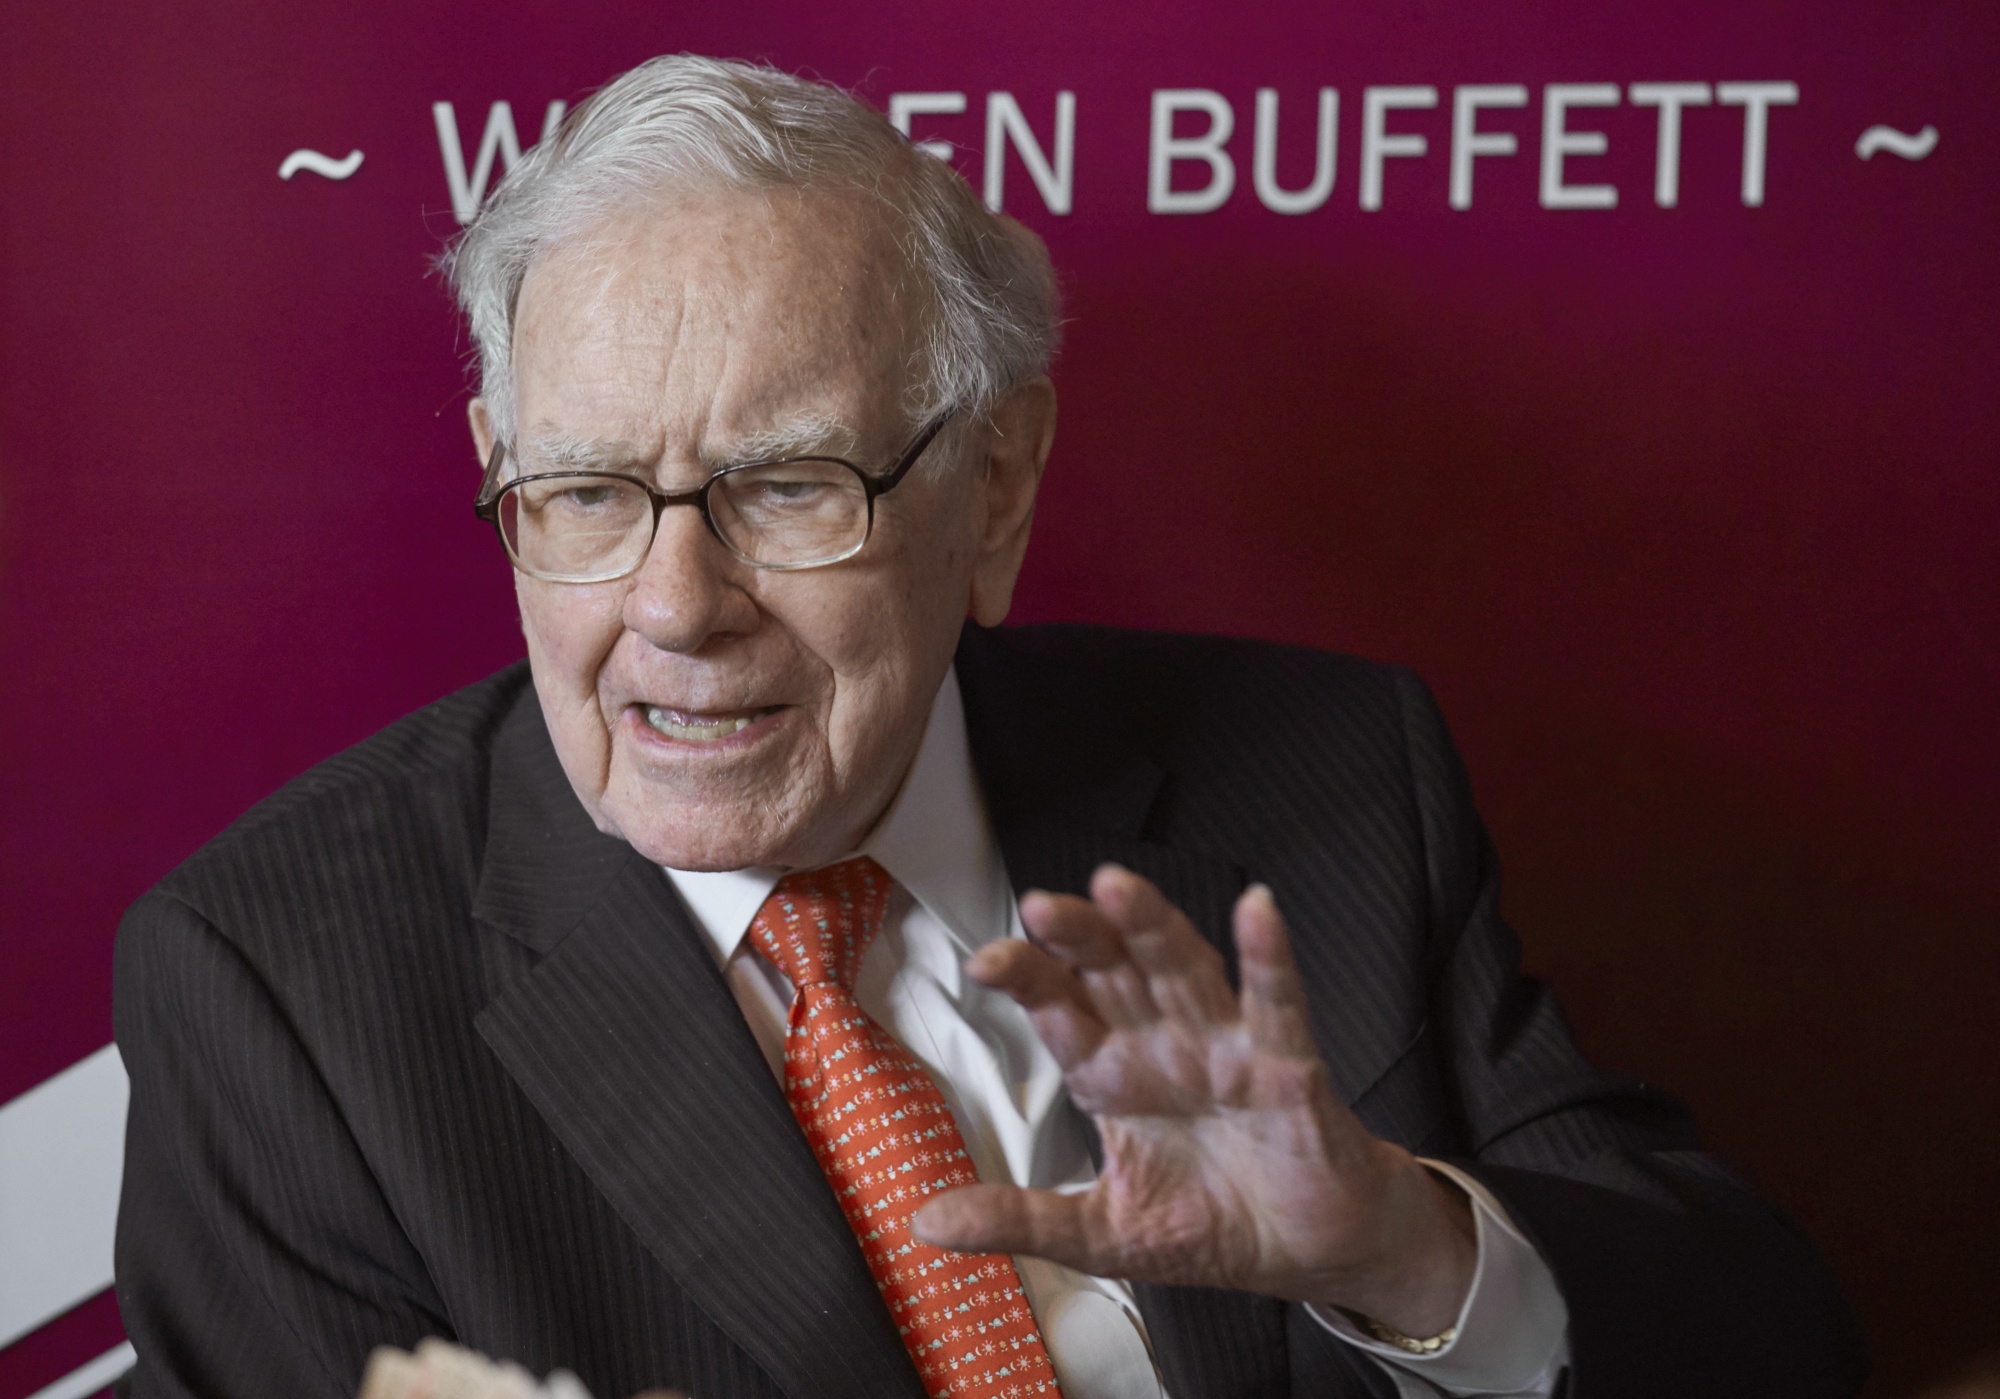 Kỷ lục mới: Một đại gia ẩn danh trả giá 19 triệu đô la để ăn trưa cùng Buffet